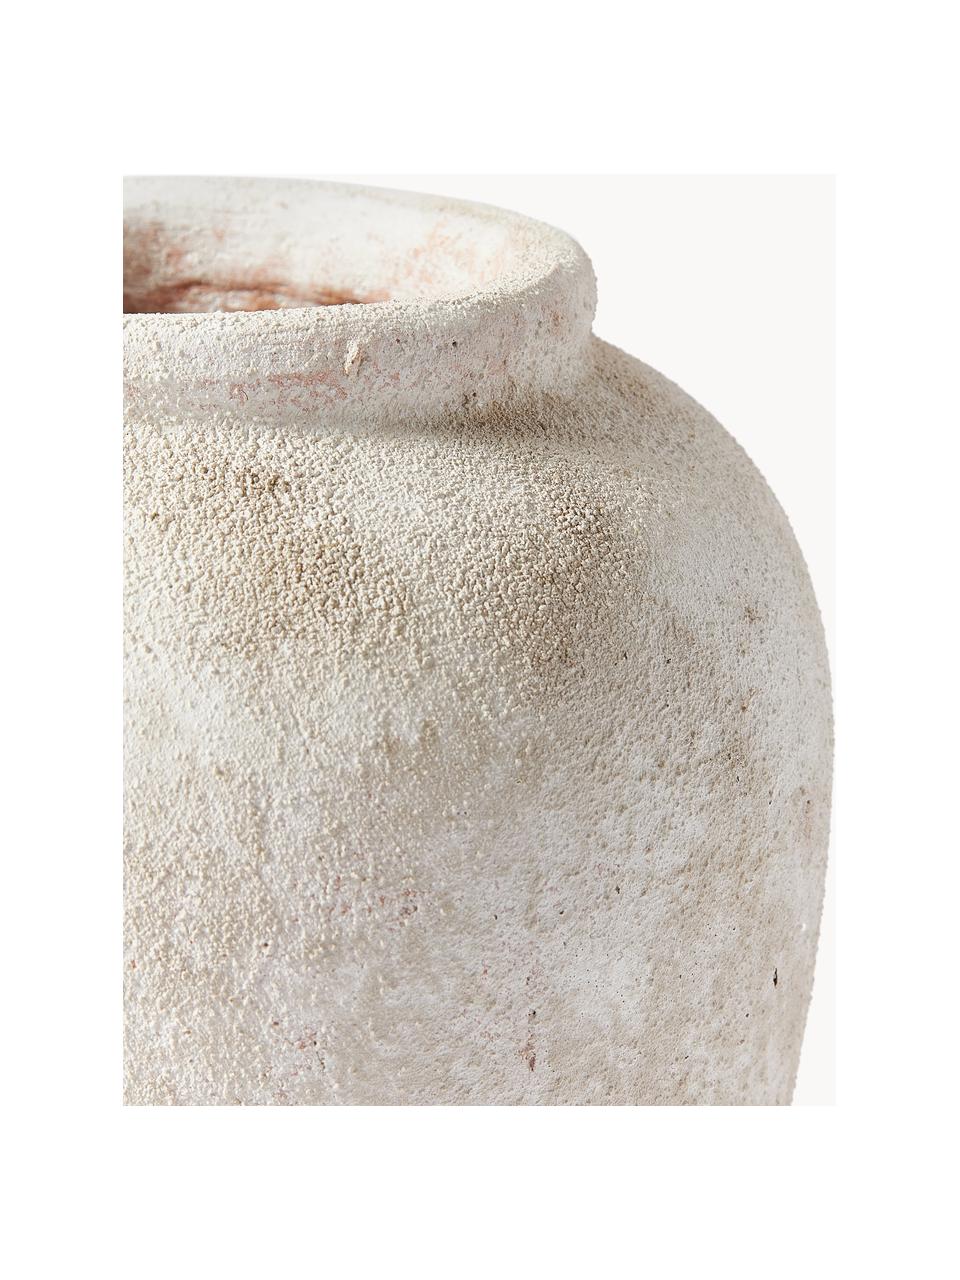 Vaso da terra con finitura sabbiata Leana, alt. 32 cm, Terracotta, Beige chiaro, Ø 26 x Alt. 32 cm